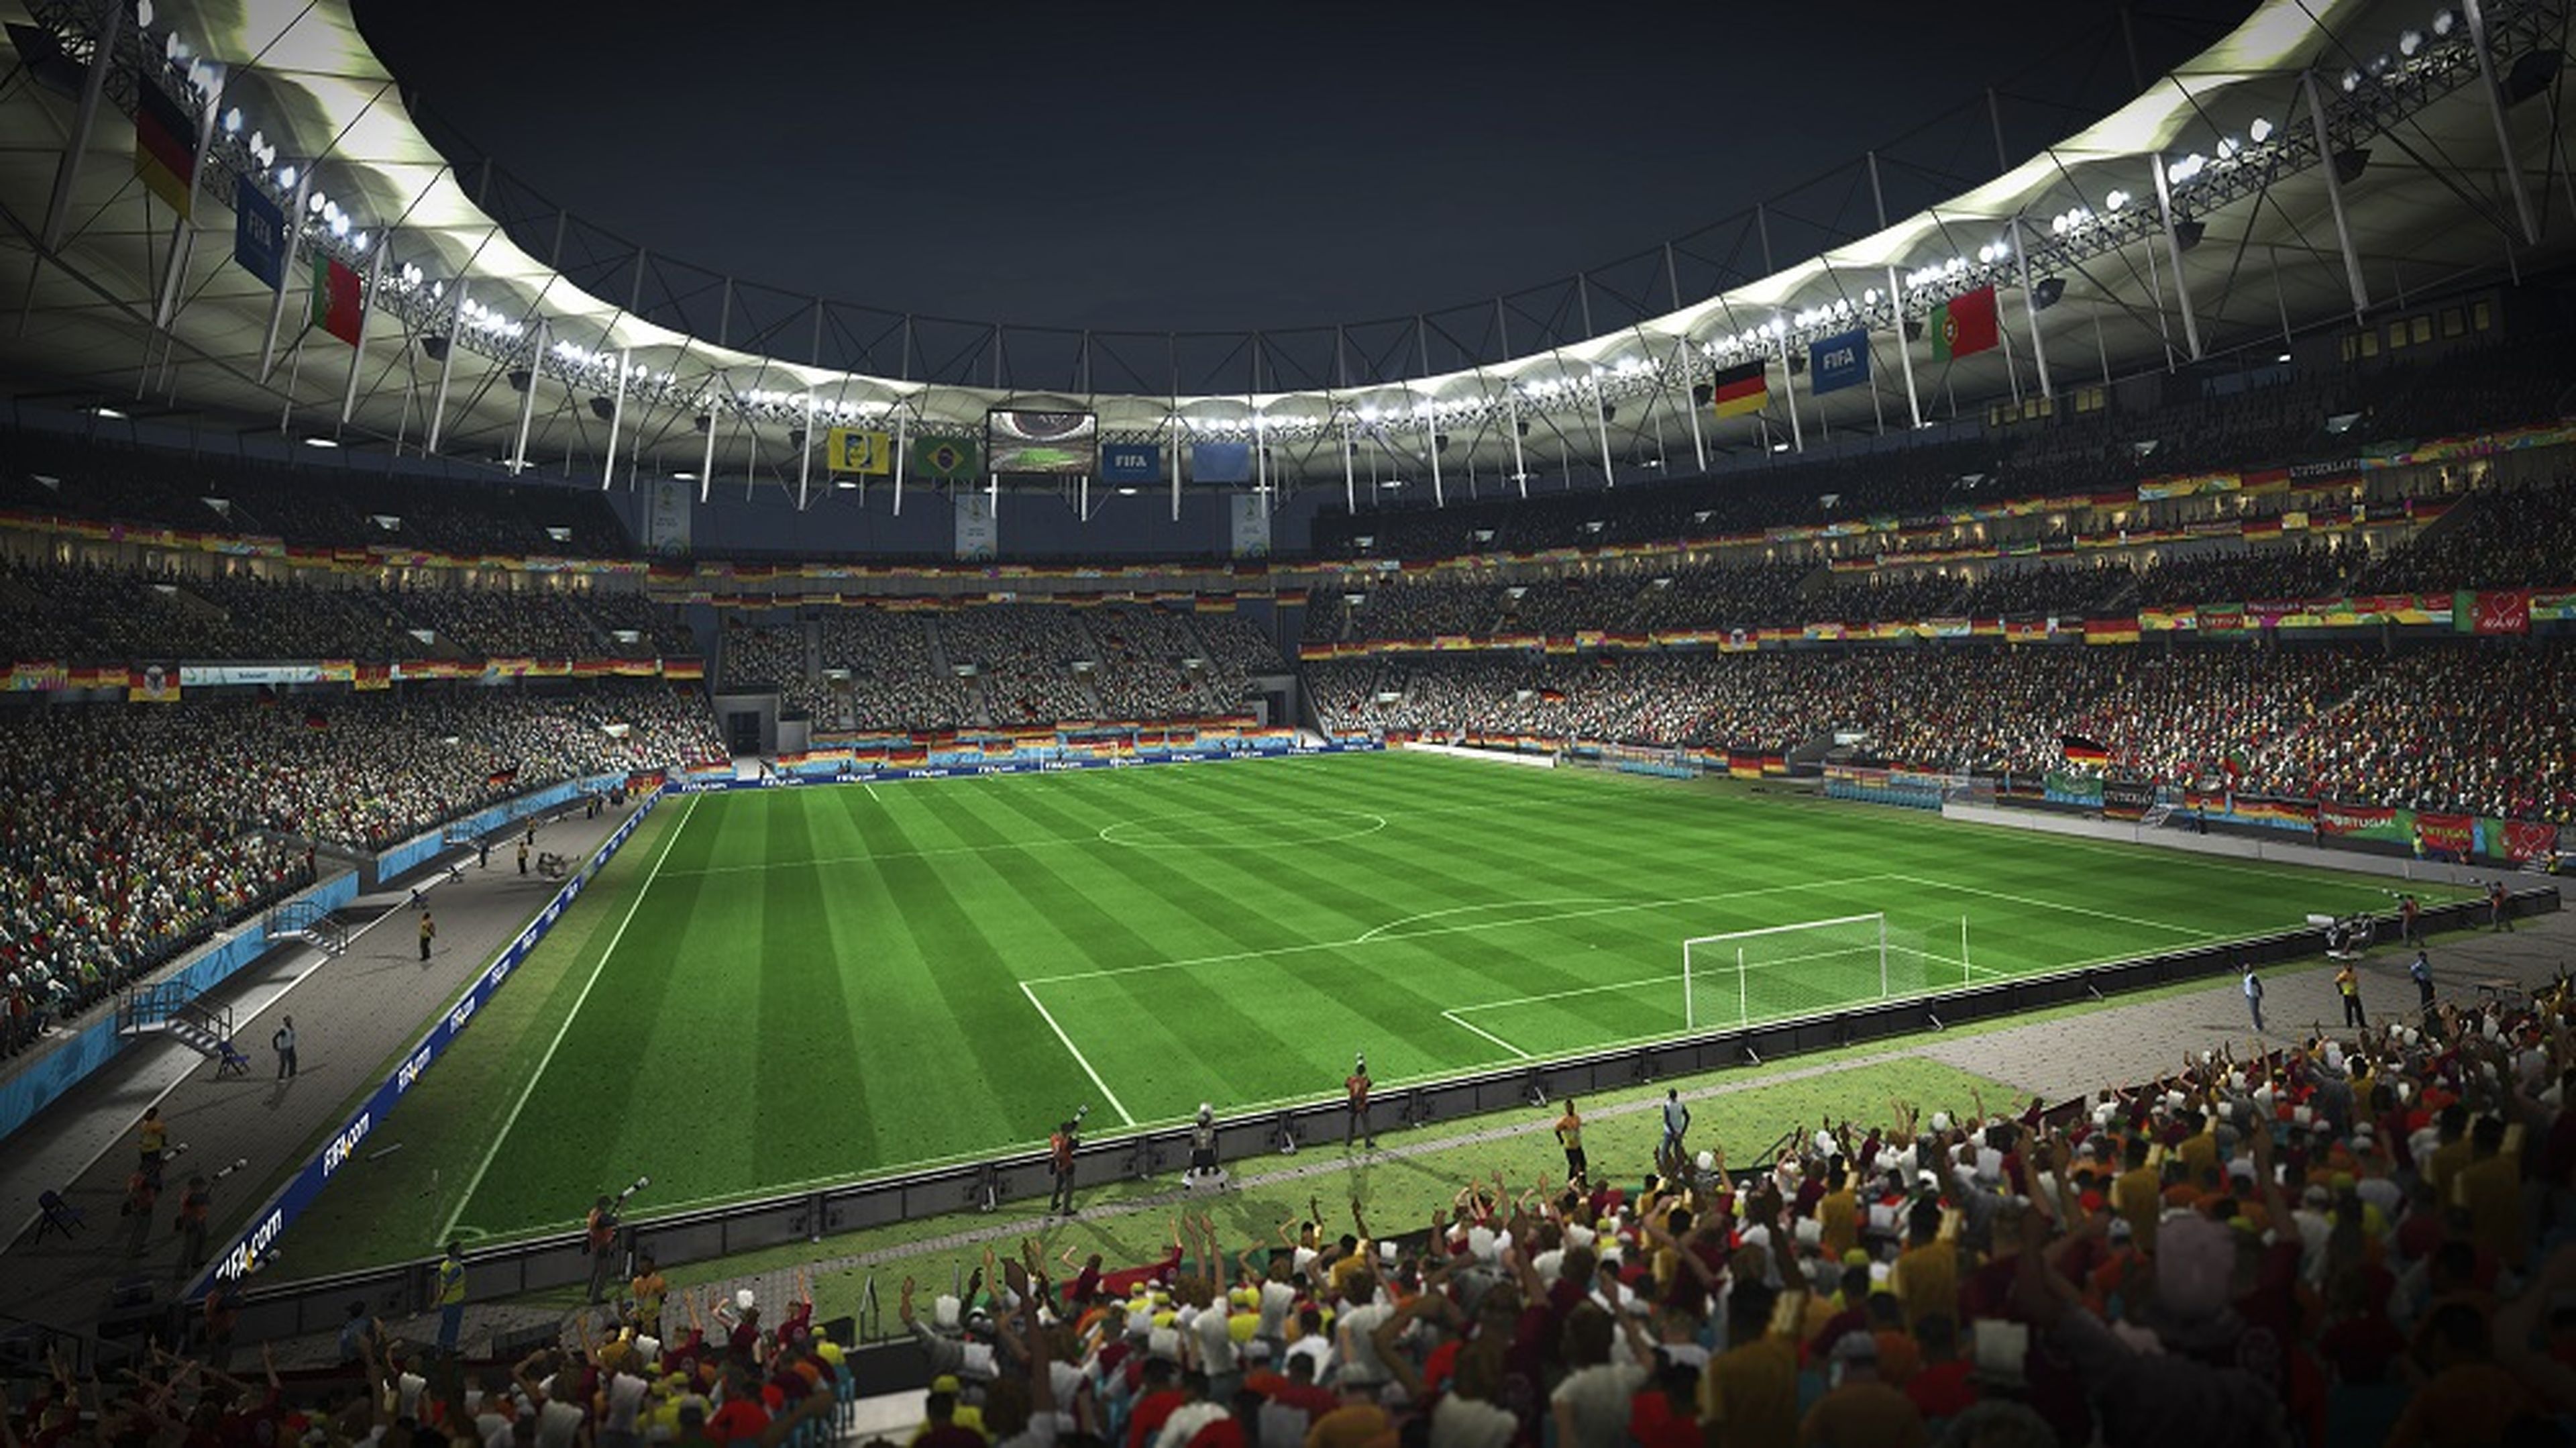 Análisis de Copa Mundial de la FIFA Brasil 2014